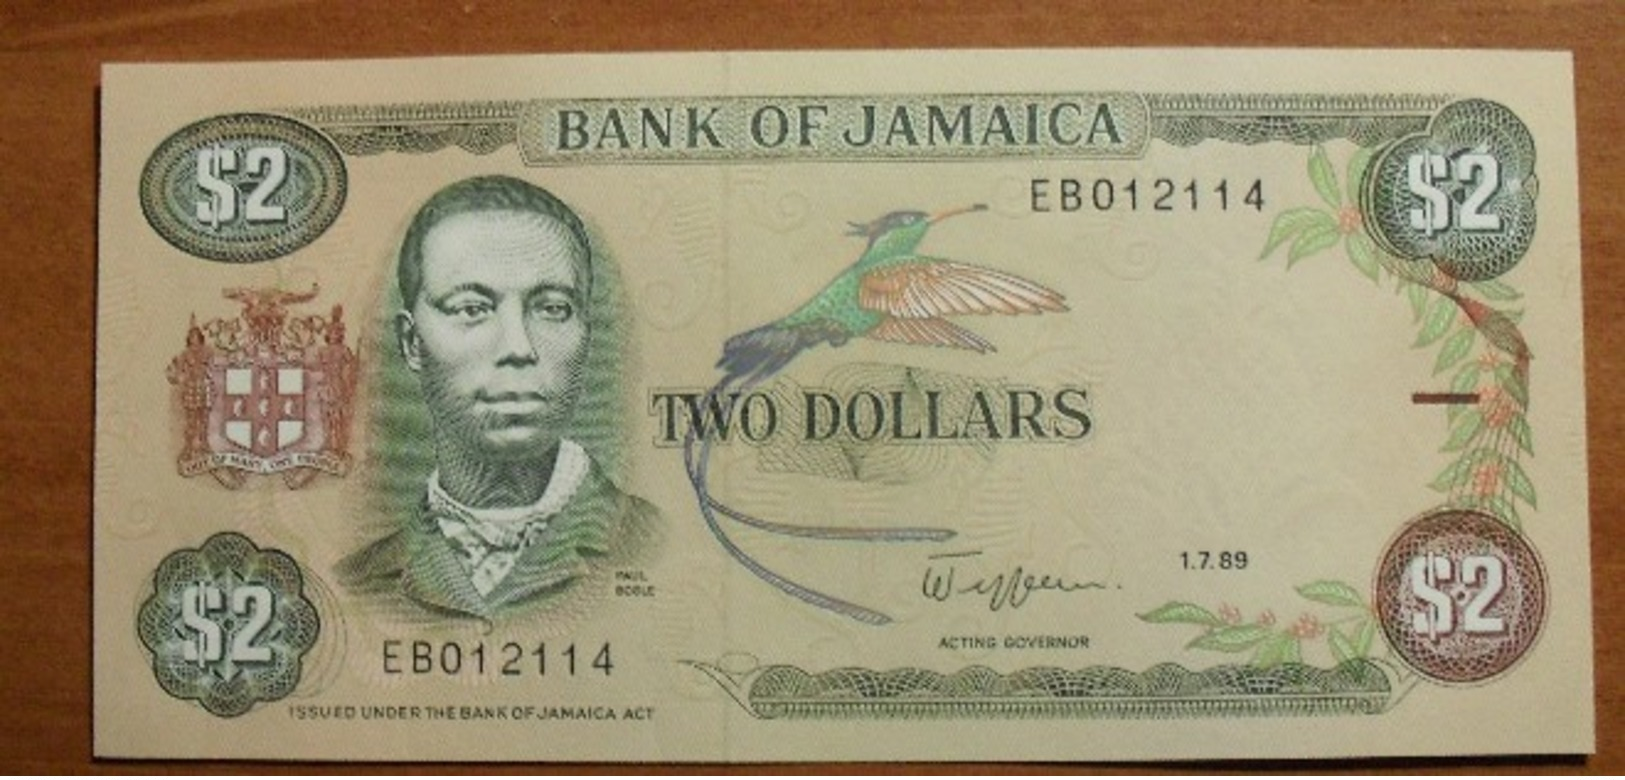 1989 - Jamaique - Jamaica - TWO DOLLARS, Paul Bogle, 1.7.89, EB012114 - Giamaica